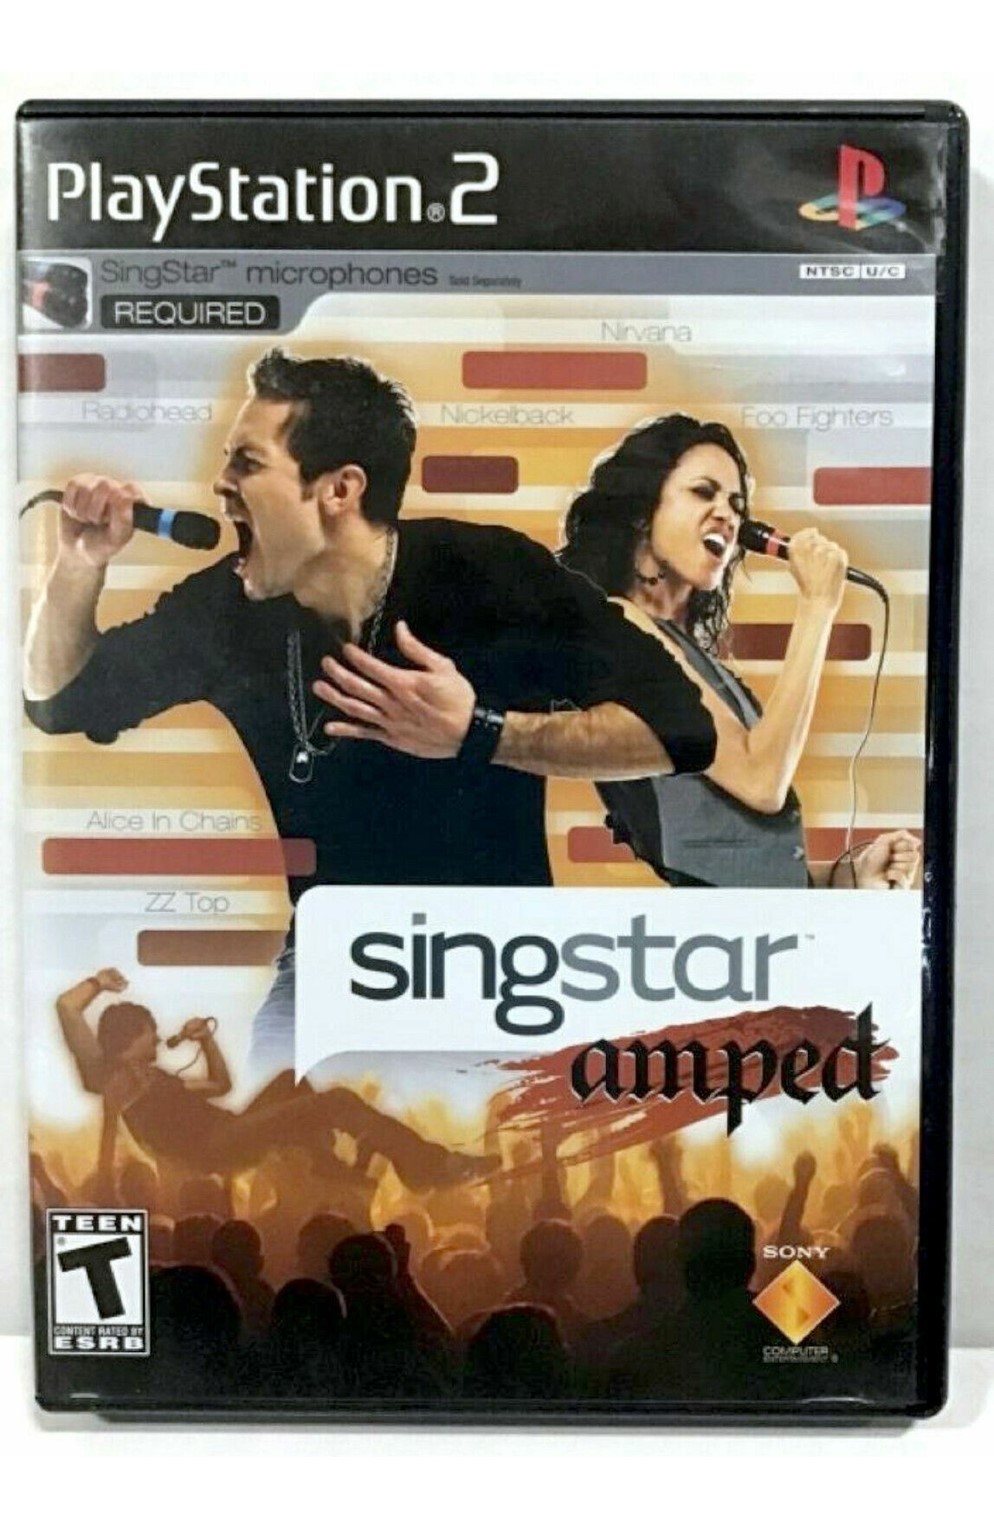 Playstation 2 Ps2 Singstar Amped